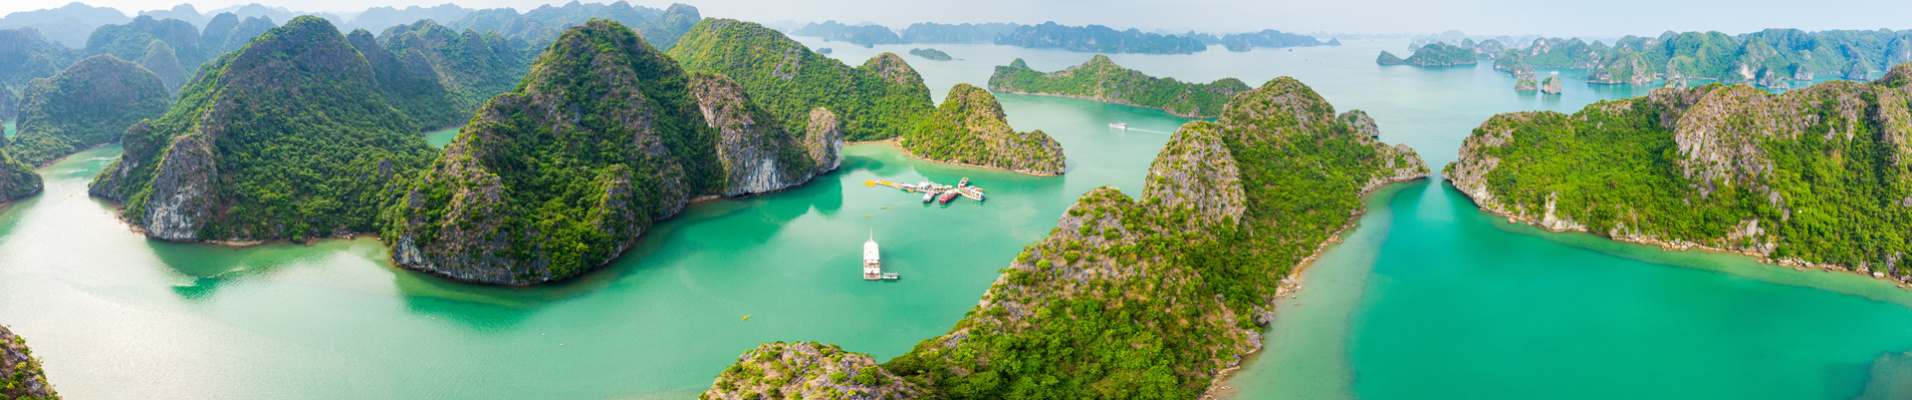 vue panoramique baie ha long vietnam